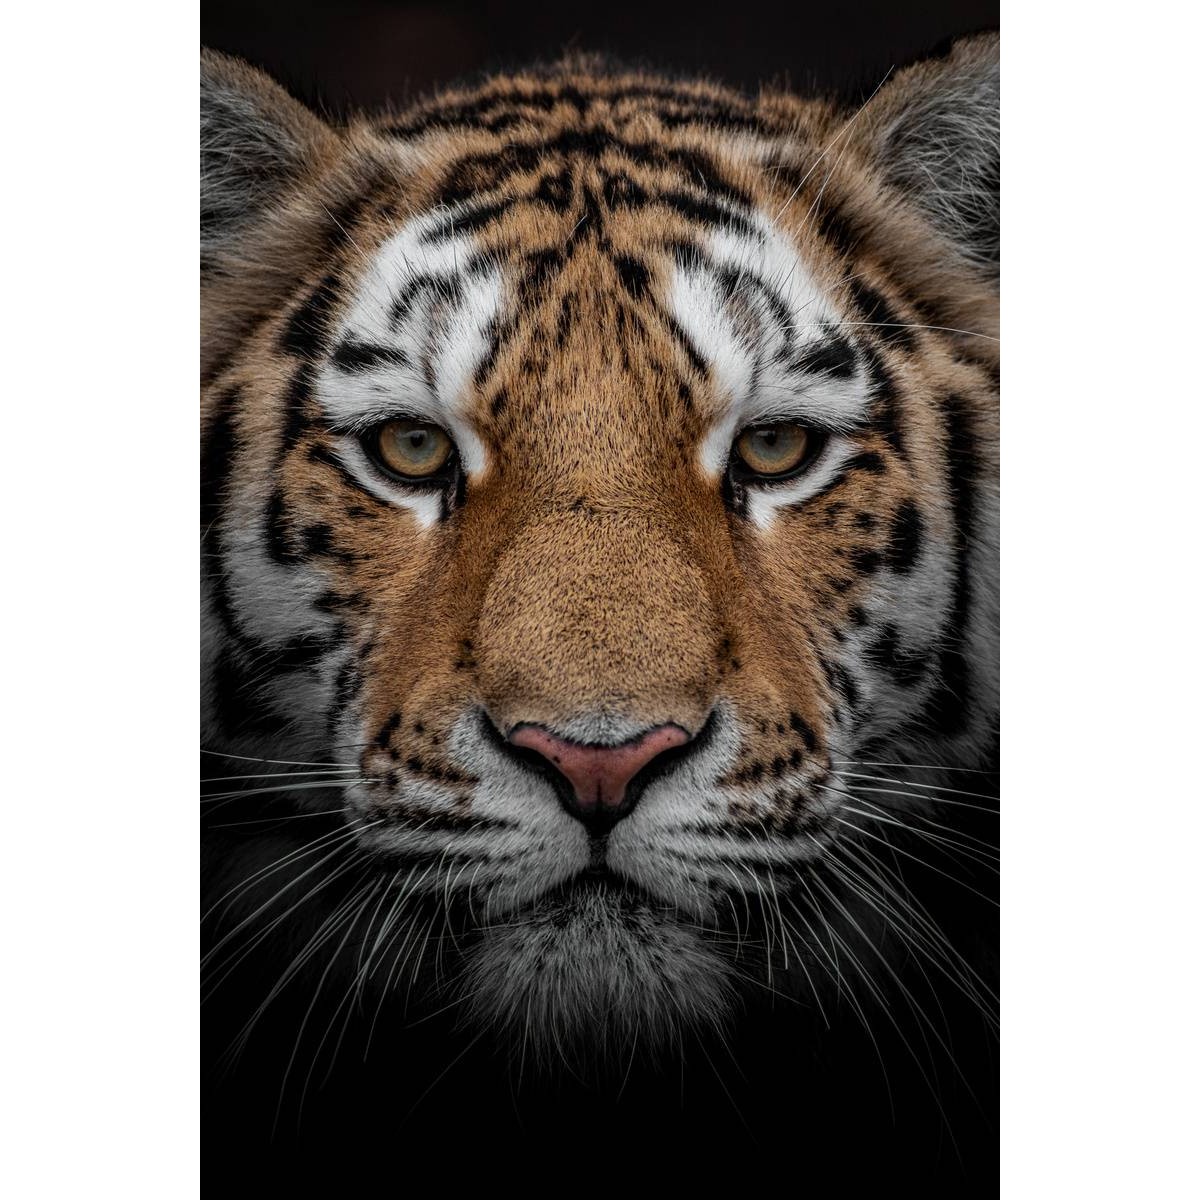 Tableau sur toile portrait d'un tigre 30x45cm